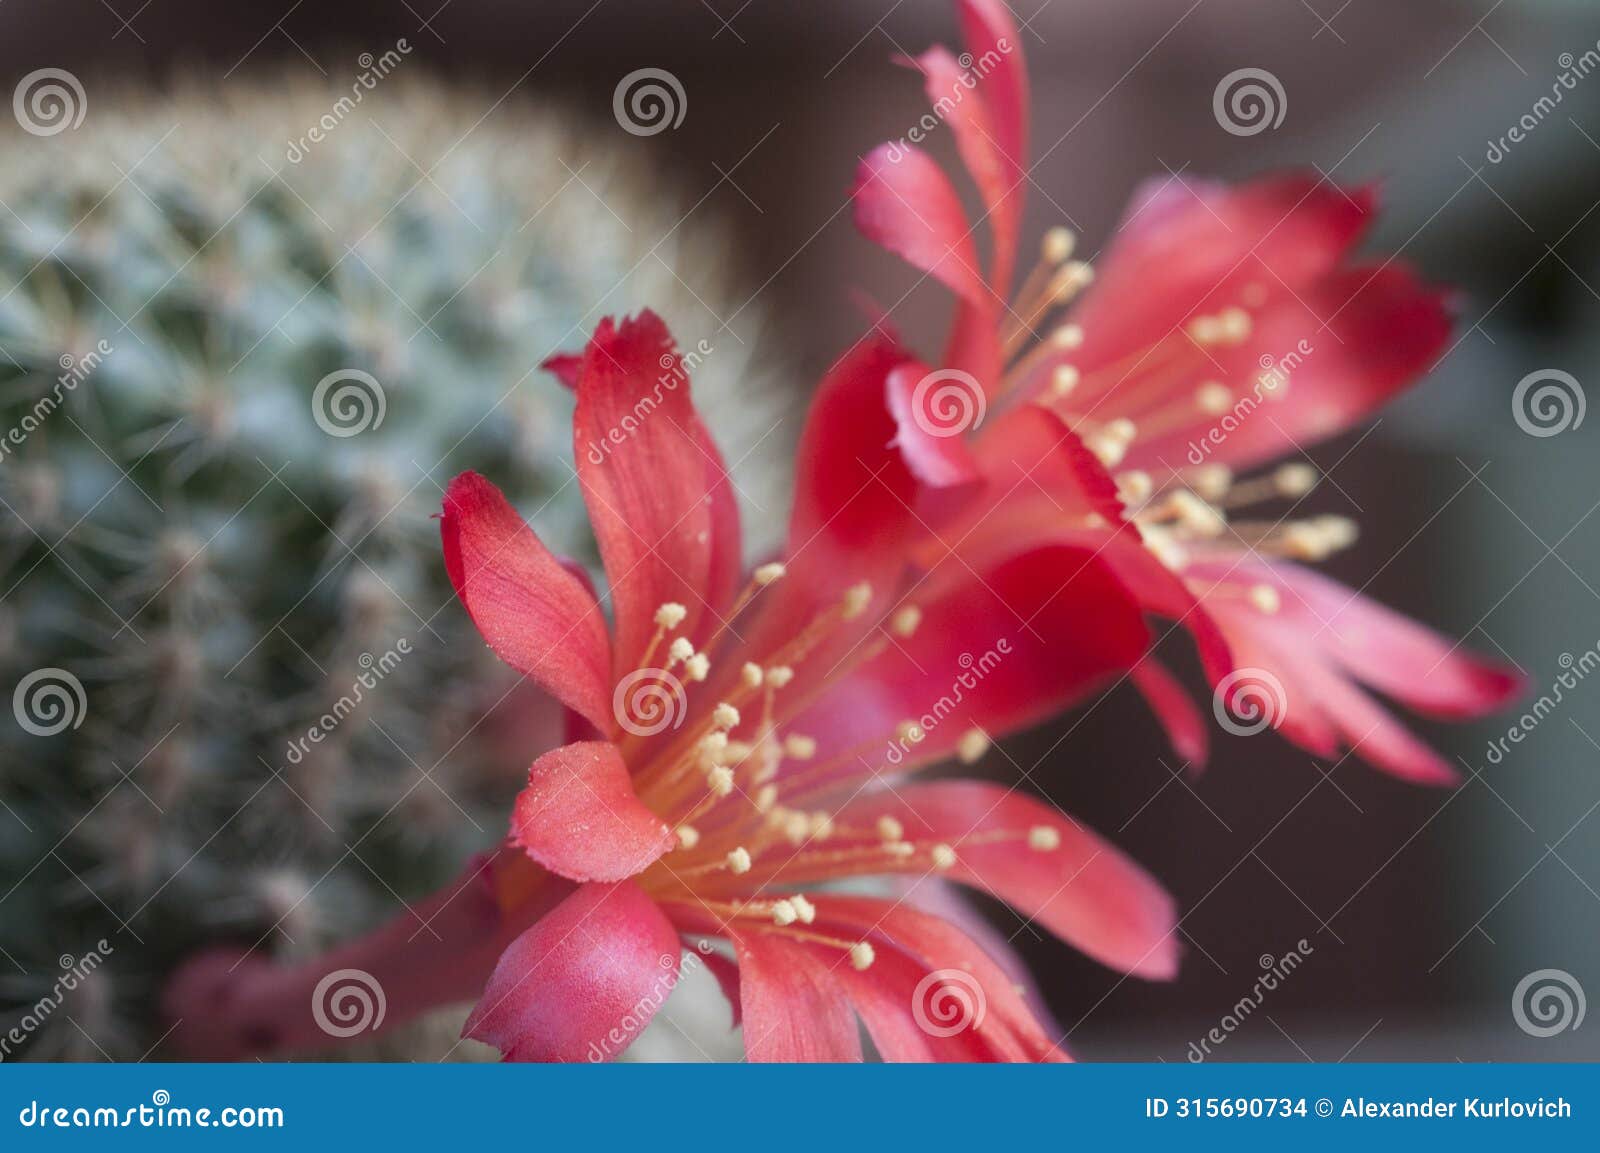 rebutia minuscula cactus flower close up